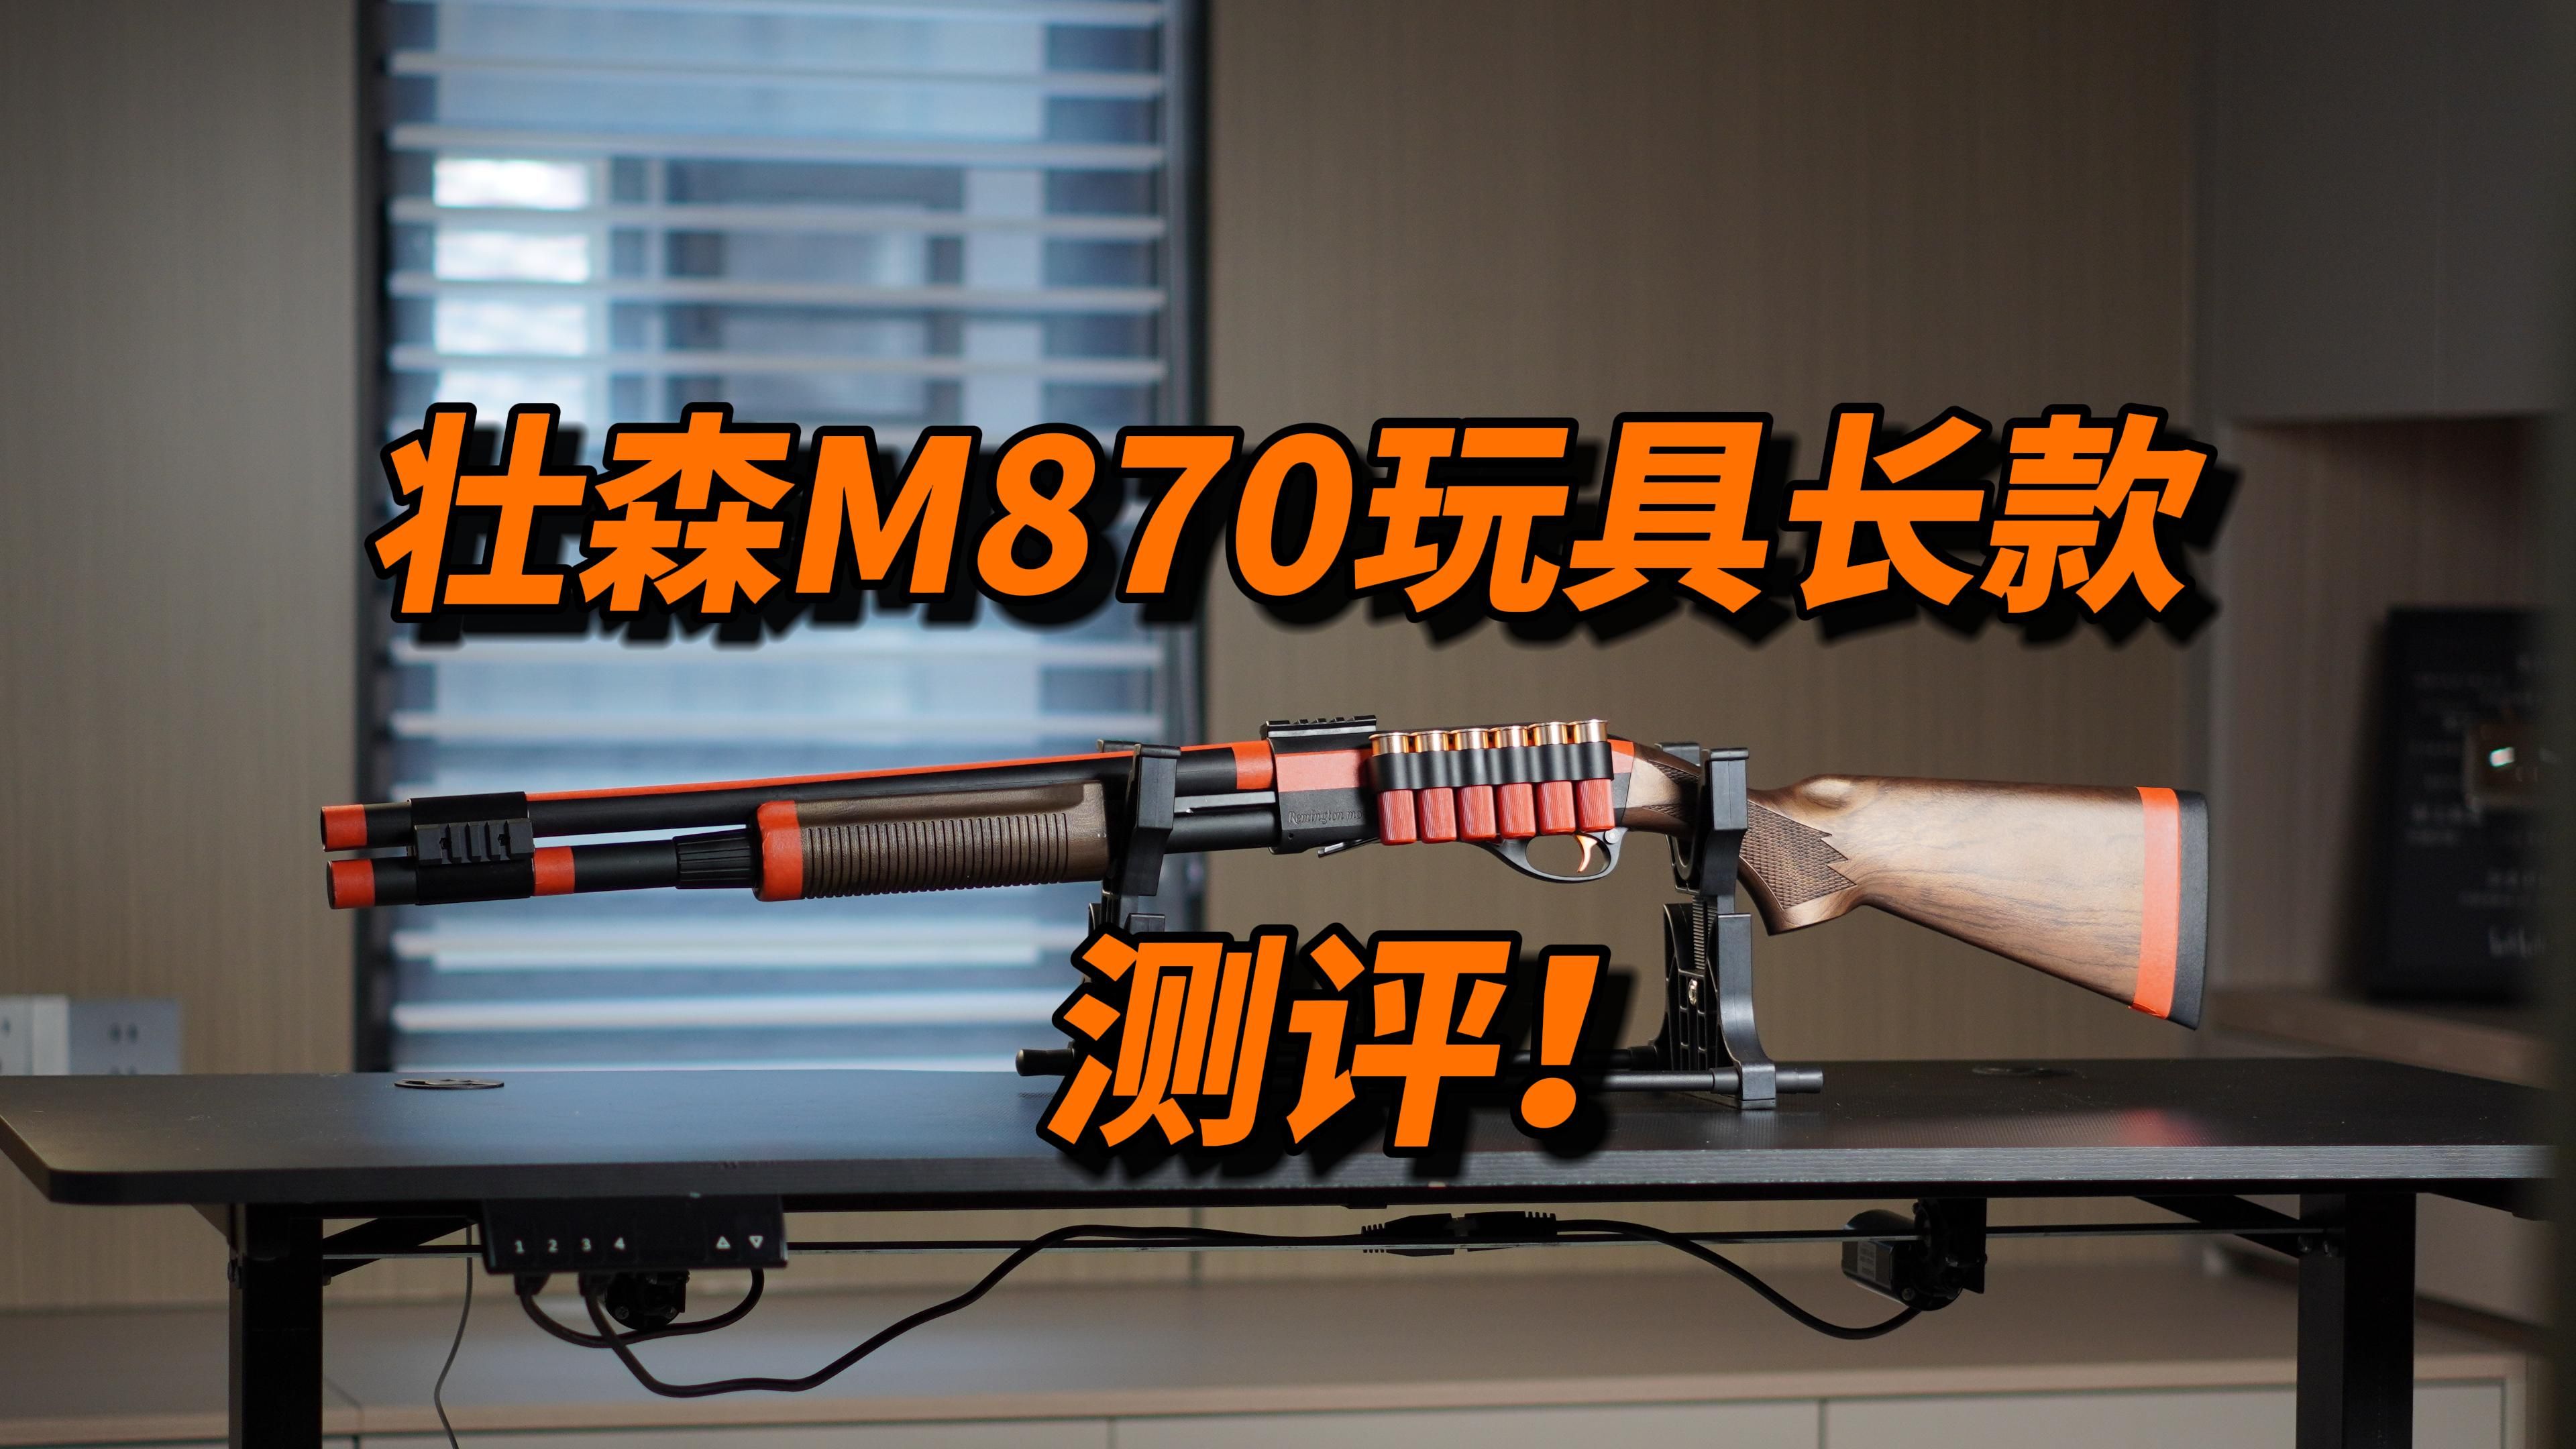 翻模R1？壮森M870玩具长款测评！